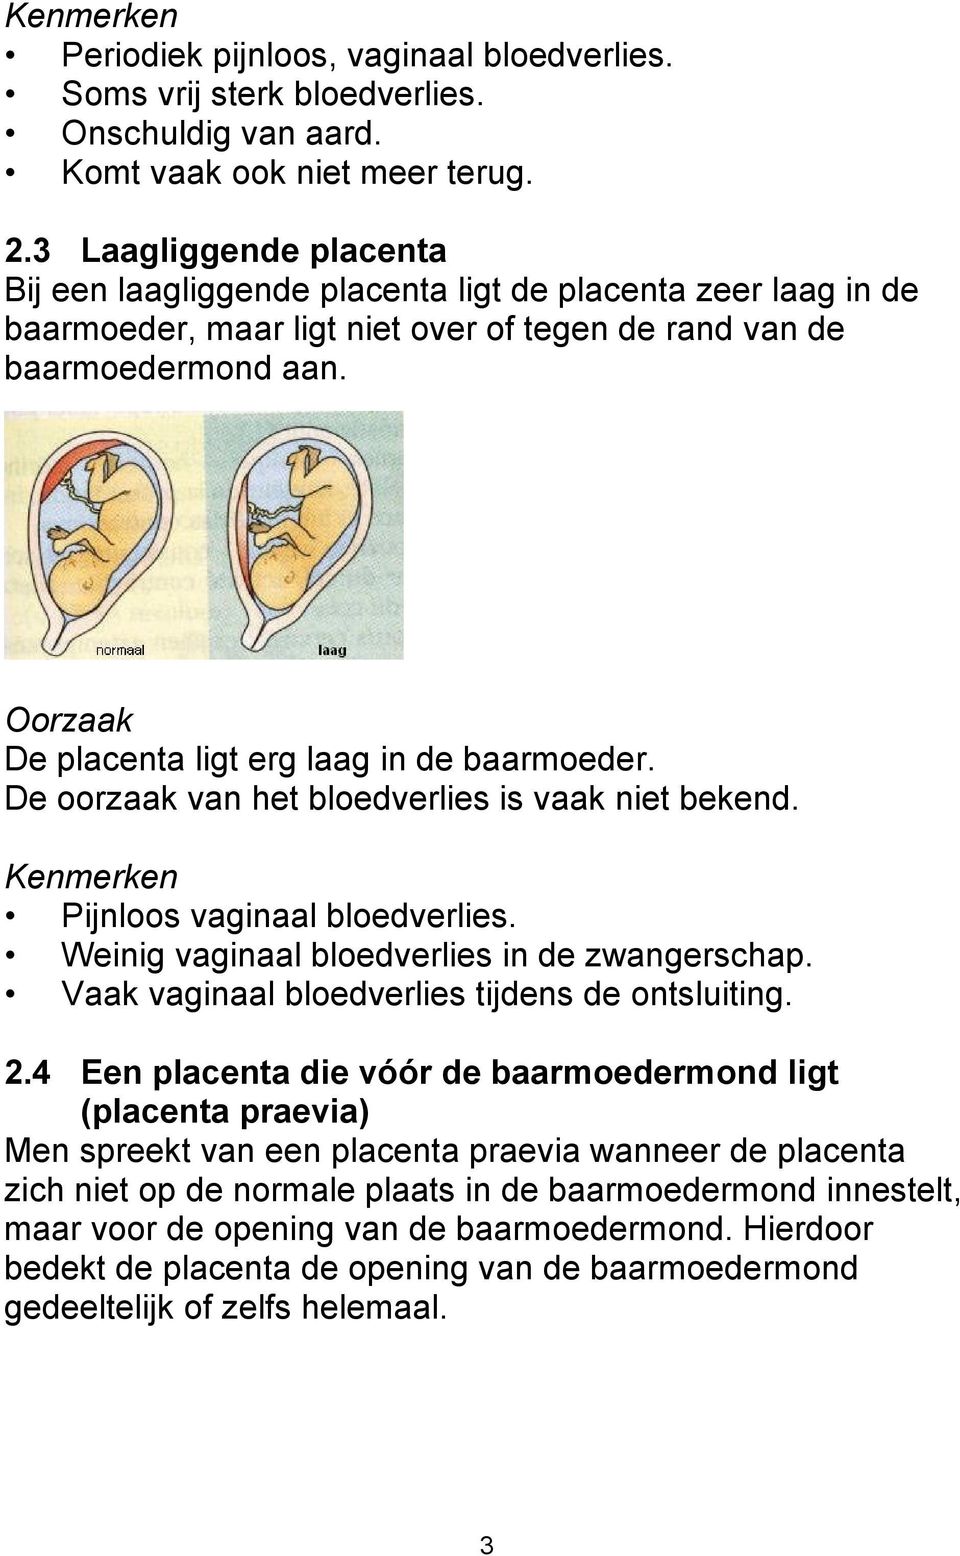 Oorzaak De placenta ligt erg laag in de baarmoeder. De oorzaak van het bloedverlies is vaak niet bekend. Kenmerken Pijnloos vaginaal bloedverlies. Weinig vaginaal bloedverlies in de zwangerschap.